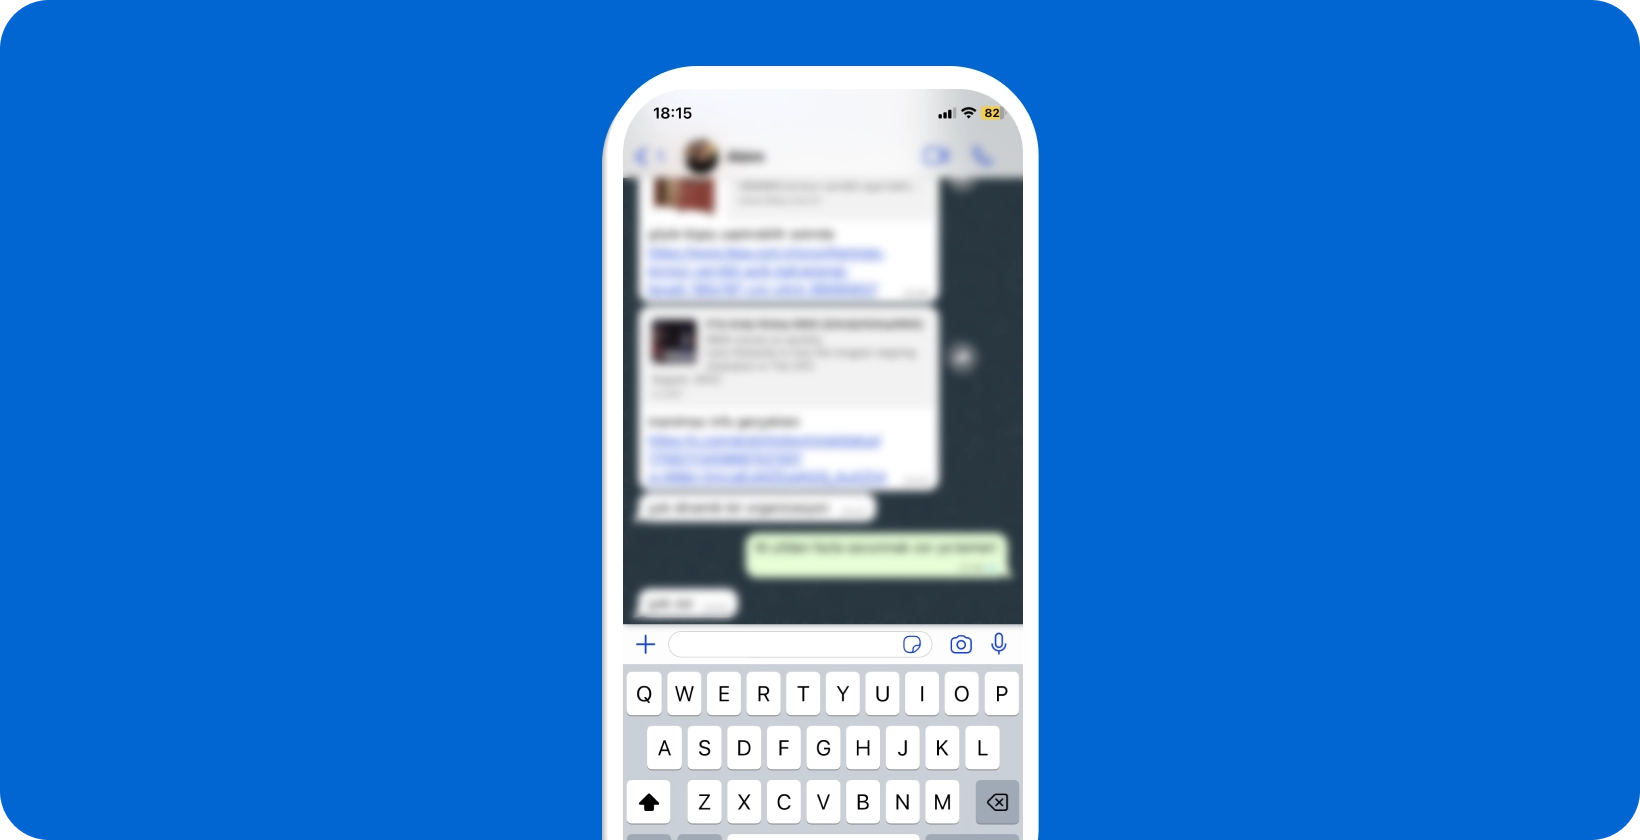 Pametni telefon, ki prikazuje aktiven WhatsApp pogovor z odprto tipkovnico, pripravljen za glasovno narekovanje.